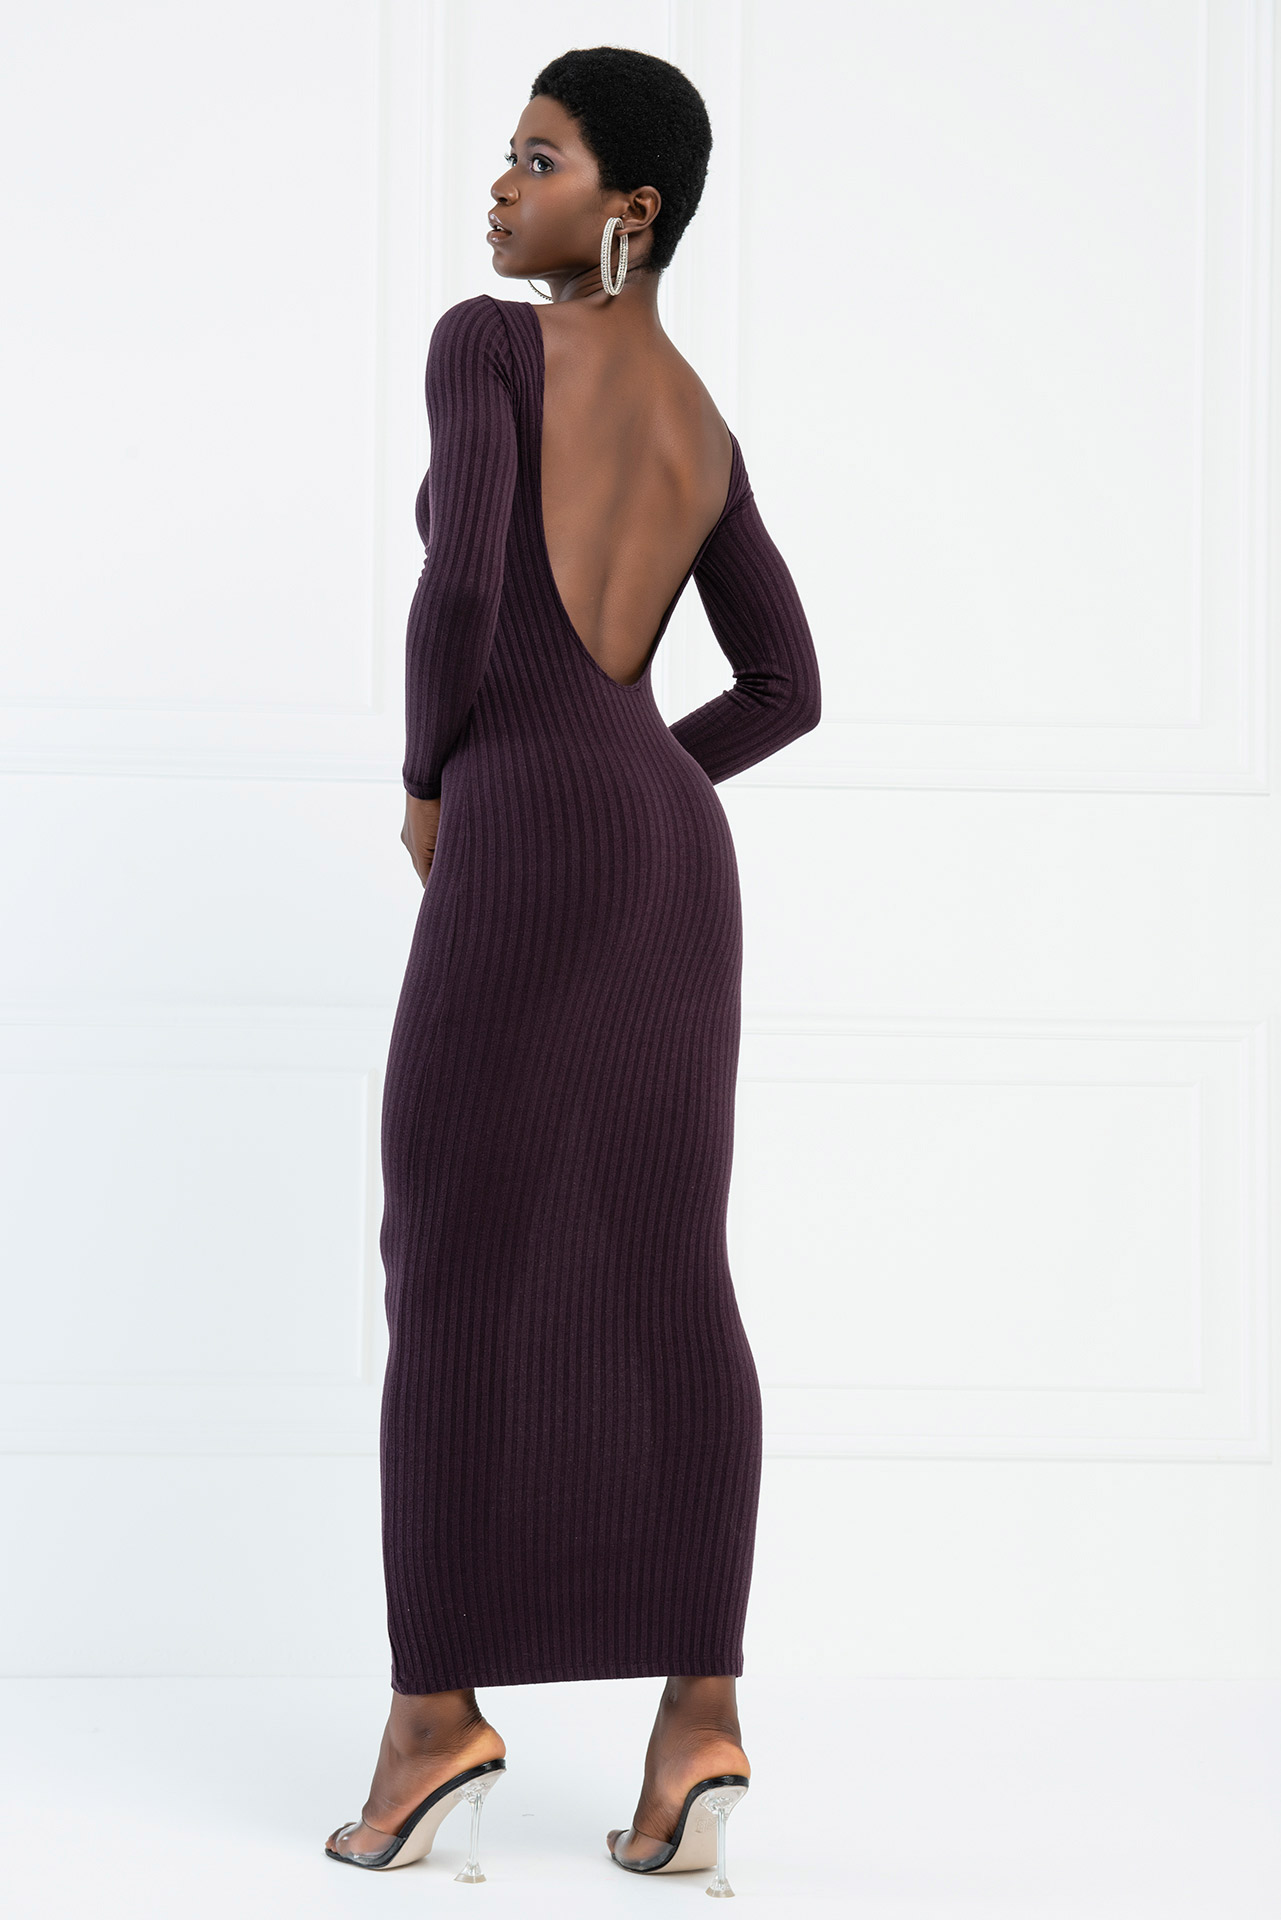 Wholesale Backless Off Shoulder Dark Purple Dress